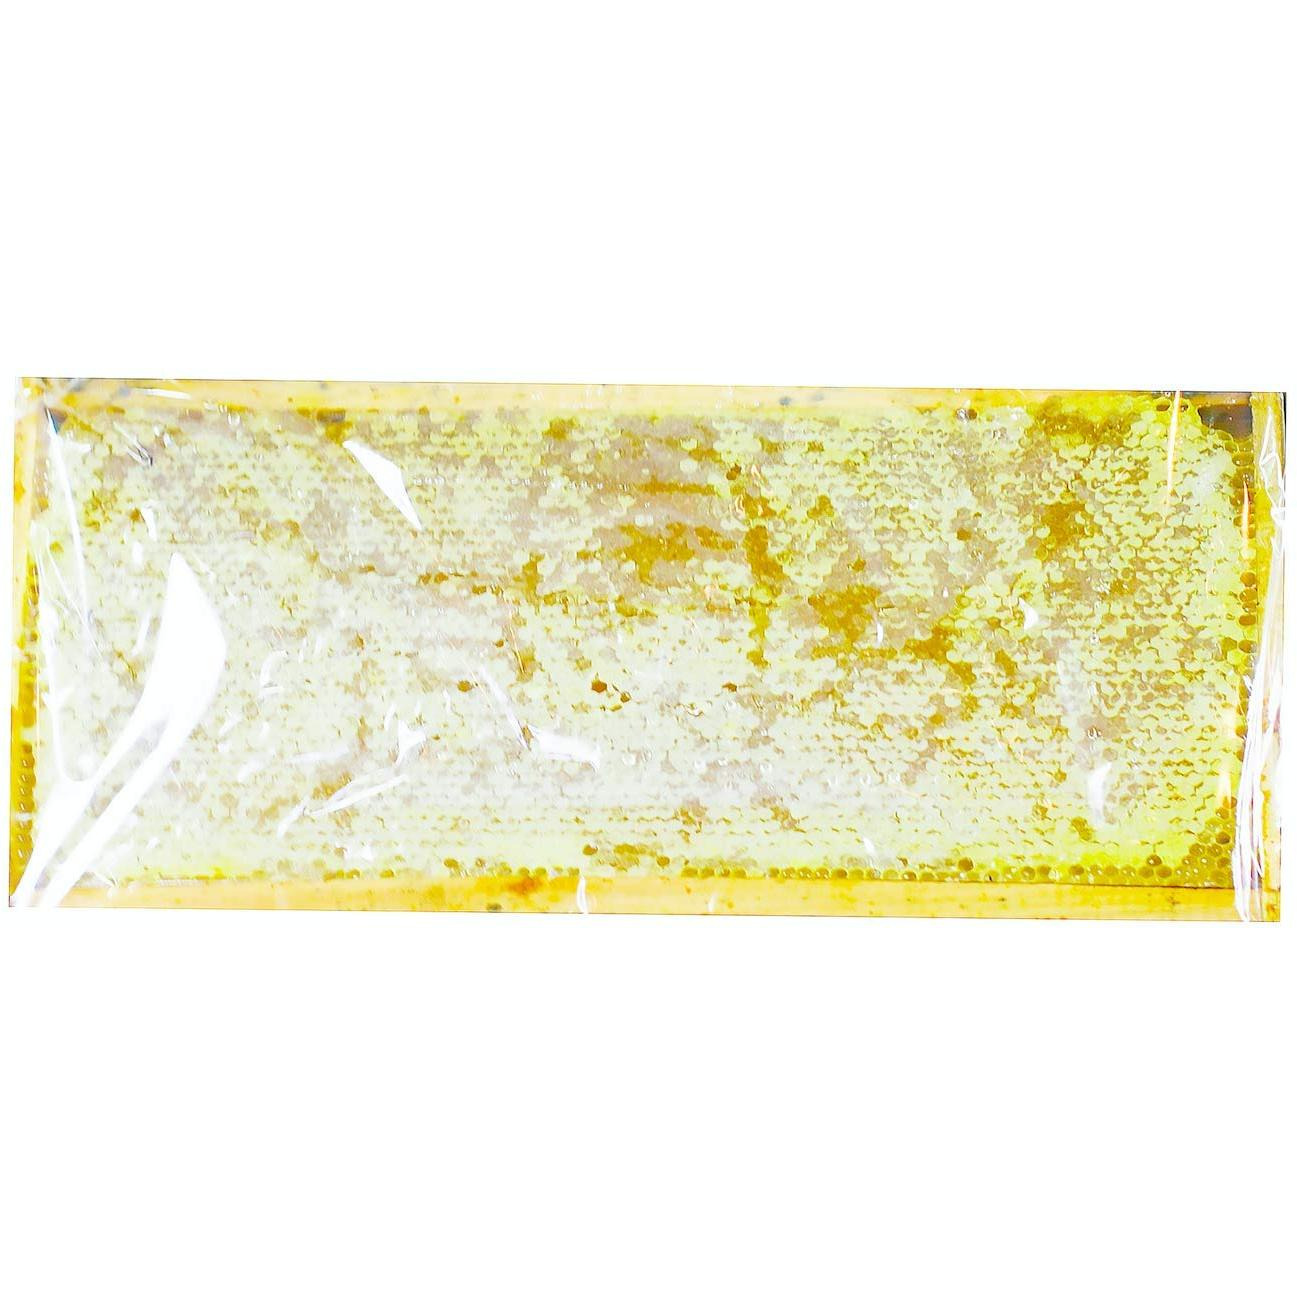 All-Natural Raw Honeycomb Acacia Honey Comb, 200g (7.05oz)